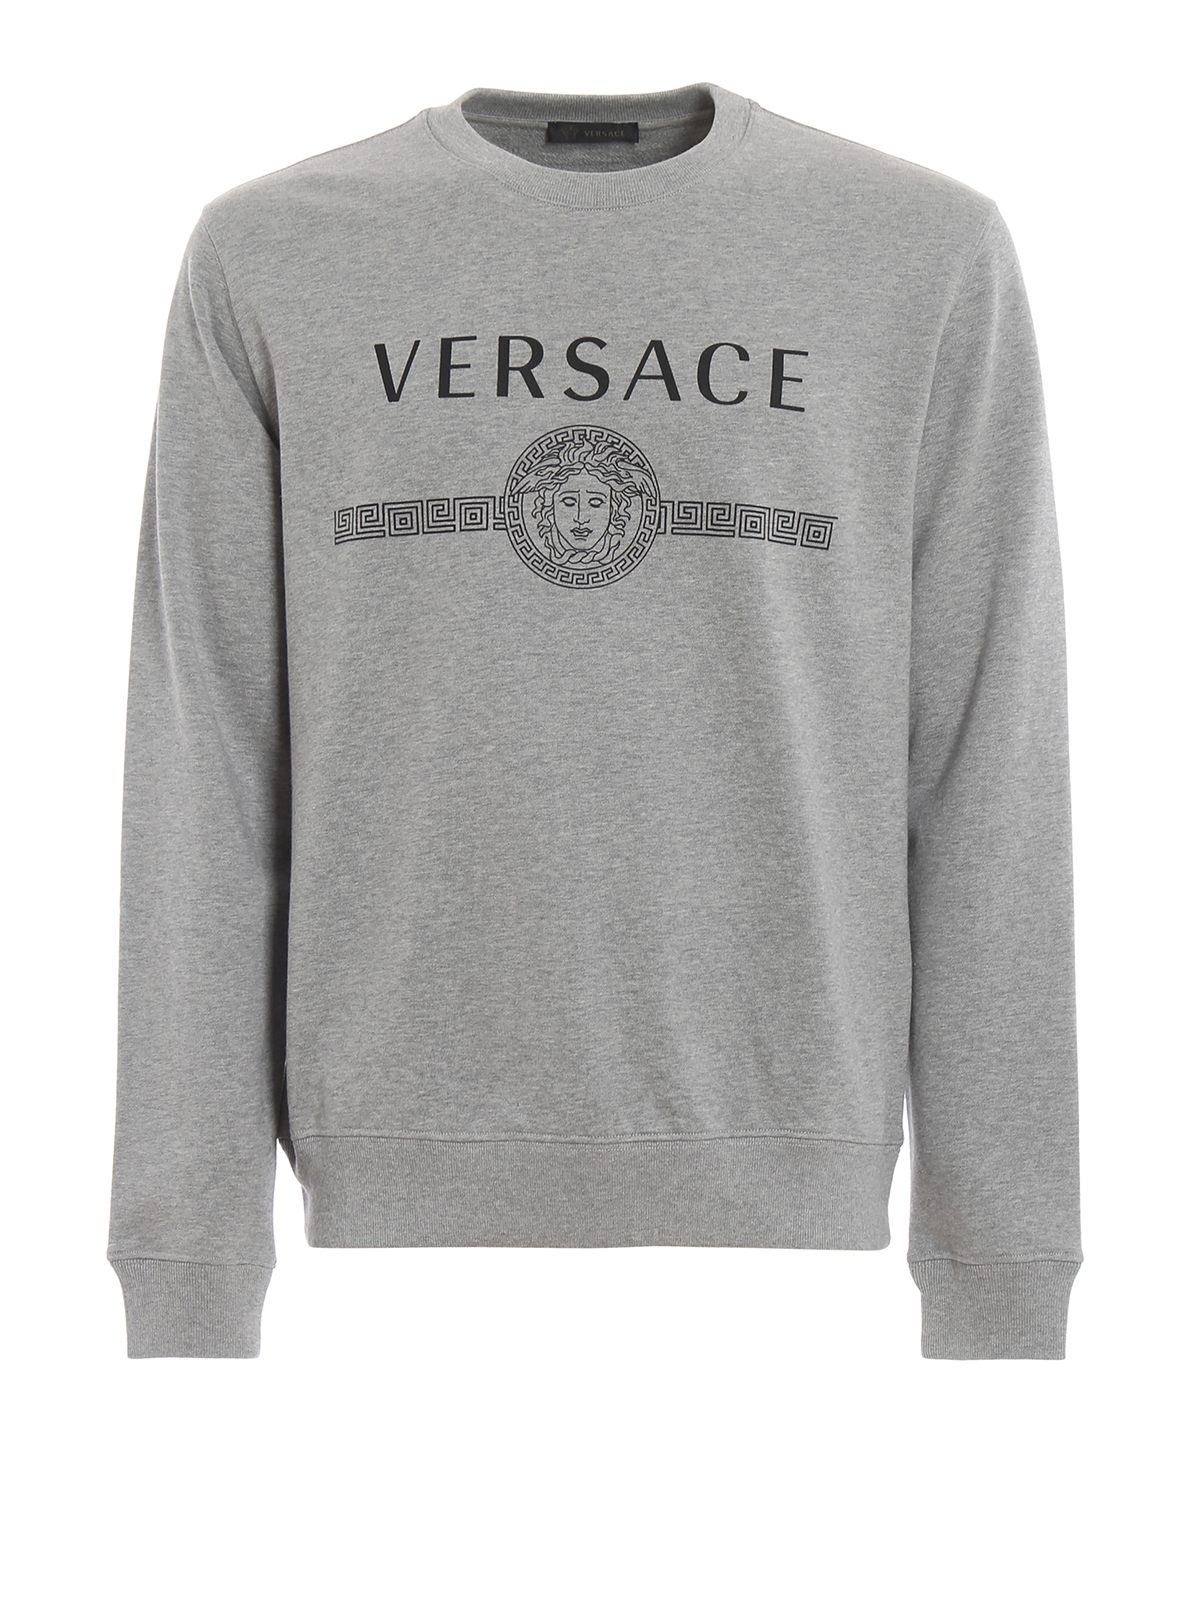 versace grey sweatshirt